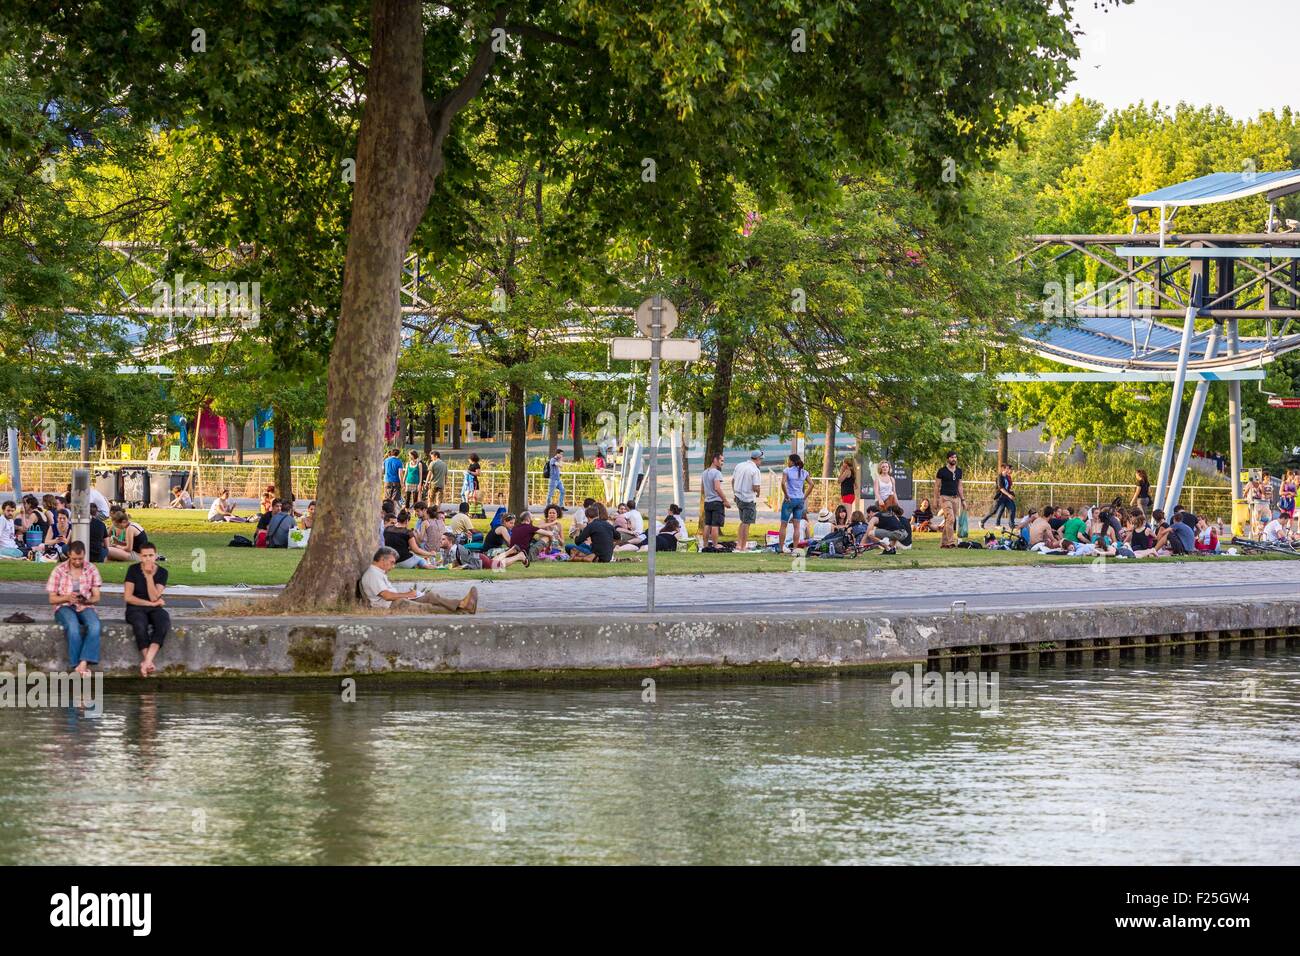 France, Paris, the Parc de la Villette, designed by architect Bernard Tschumi in 1983, the Ourcq canal Stock Photo